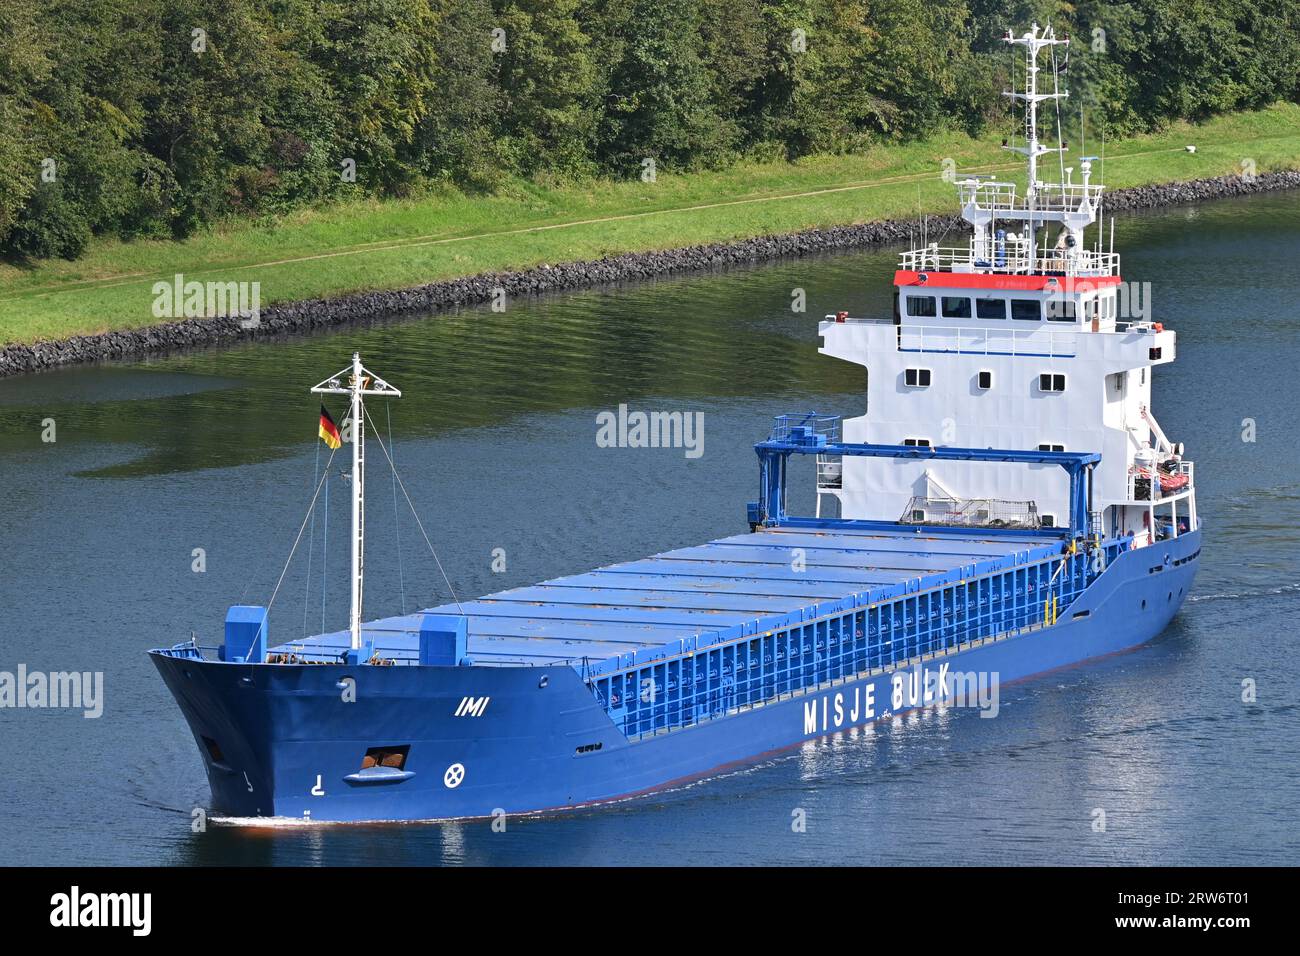 Misje Bulk's General Cargo Ship IMI che passa per il canale Kiel Foto Stock